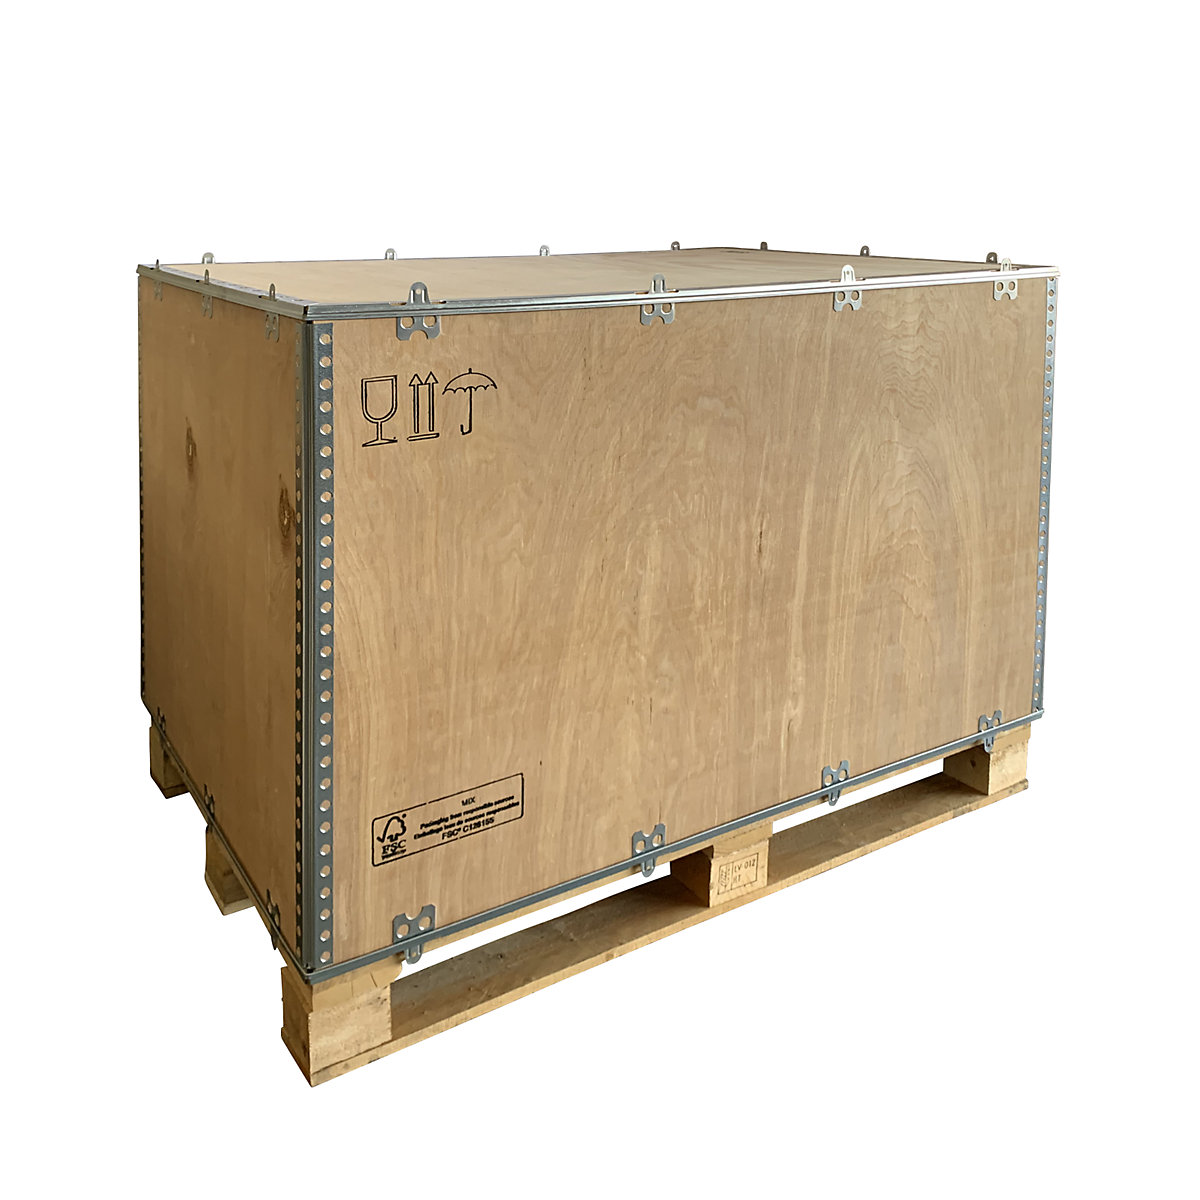 Opvouwbare houten kist, standaard, l x b x h = 1180 x 780 x 750 mm, vanaf 1 stuk-1